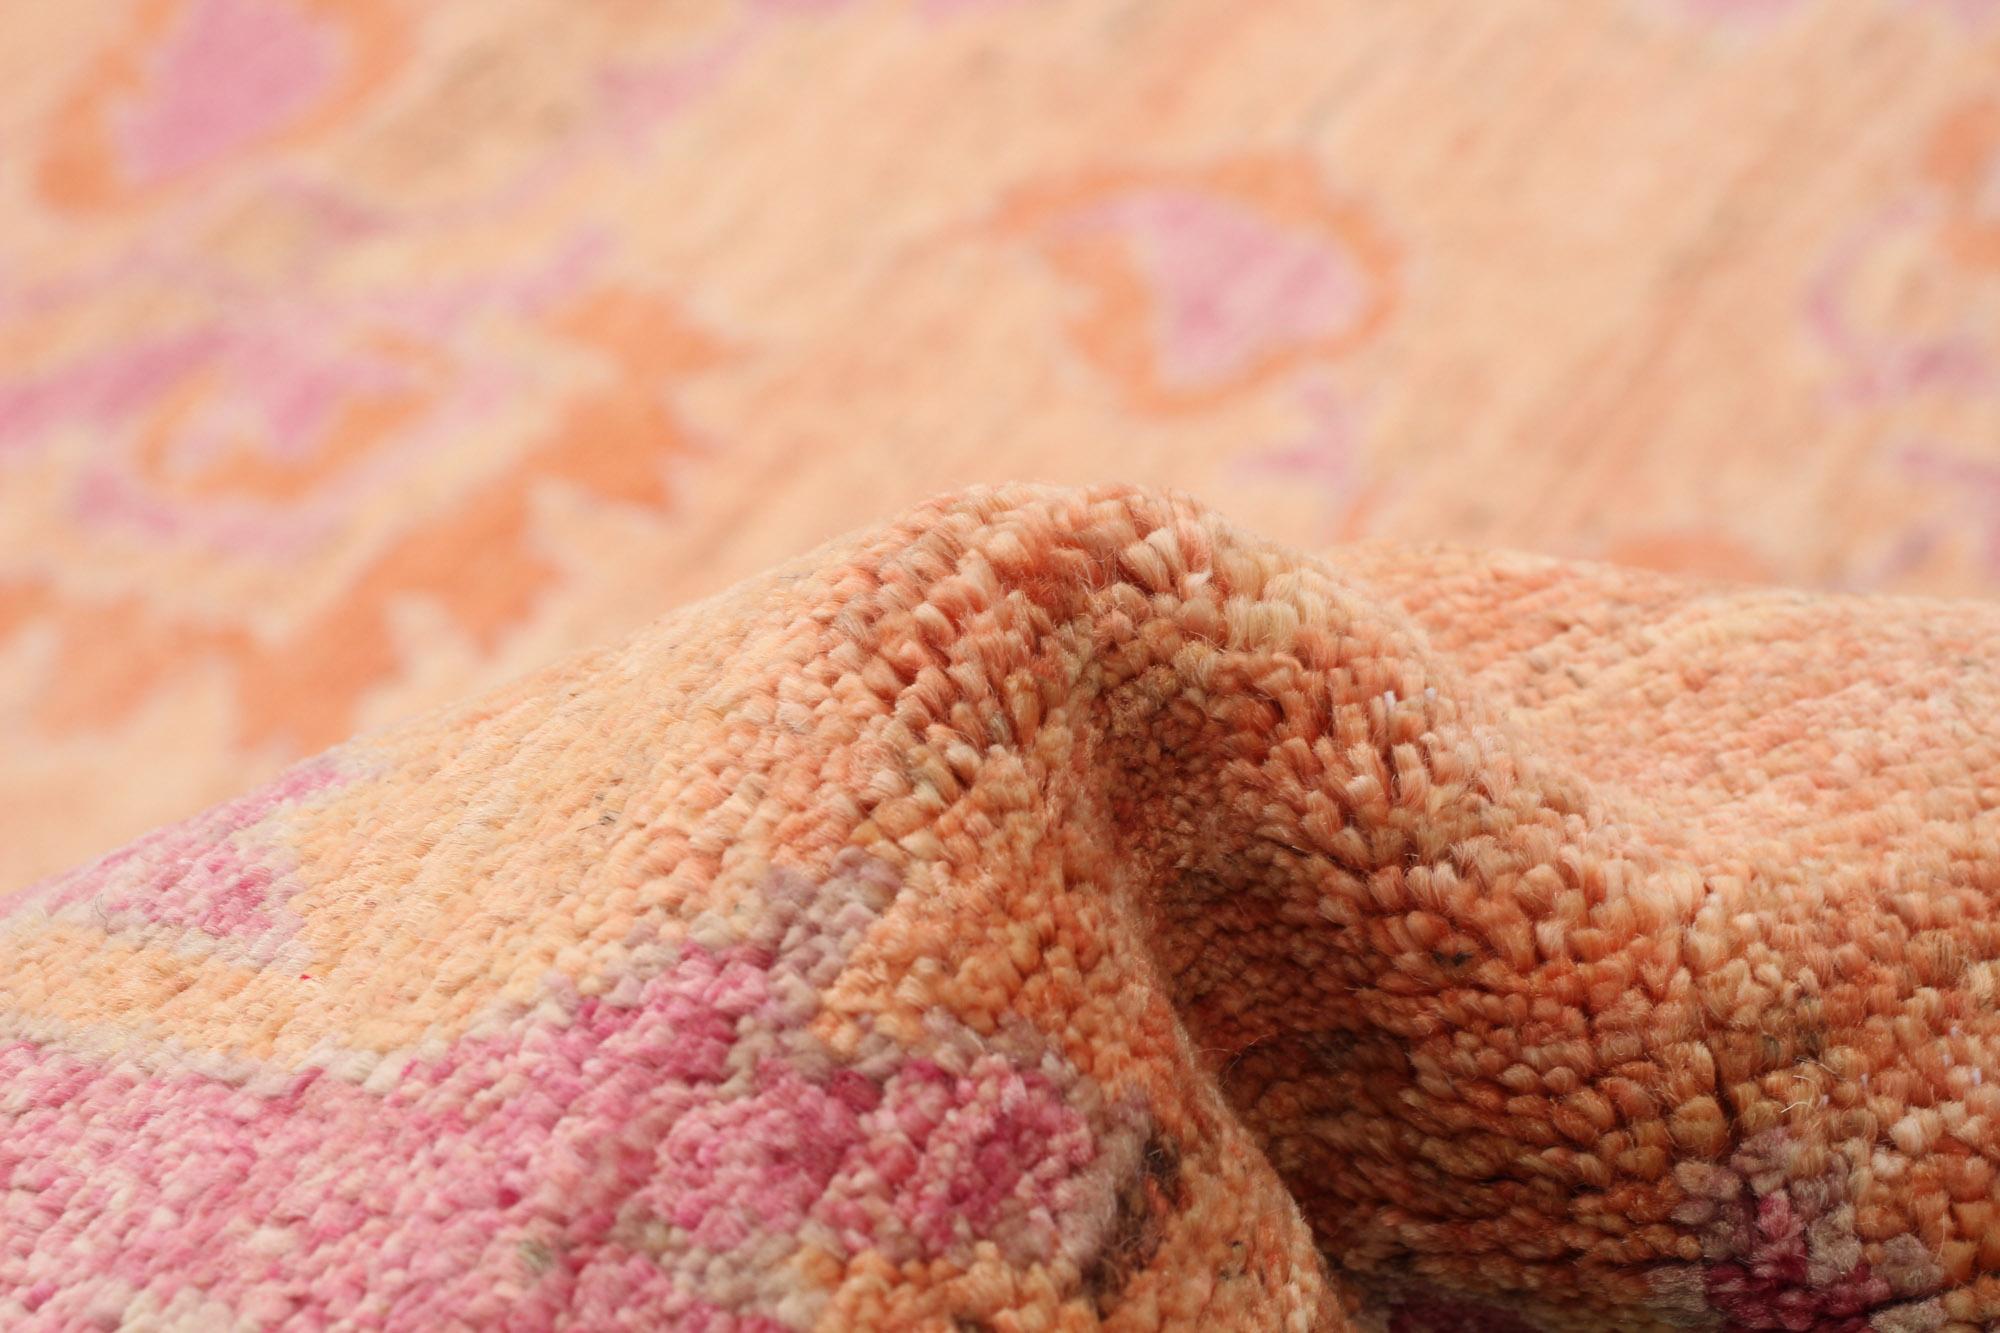 Fine Persian Oushak Rug, Pink & Orange, Transitional Floral Design - 10'x14' 1